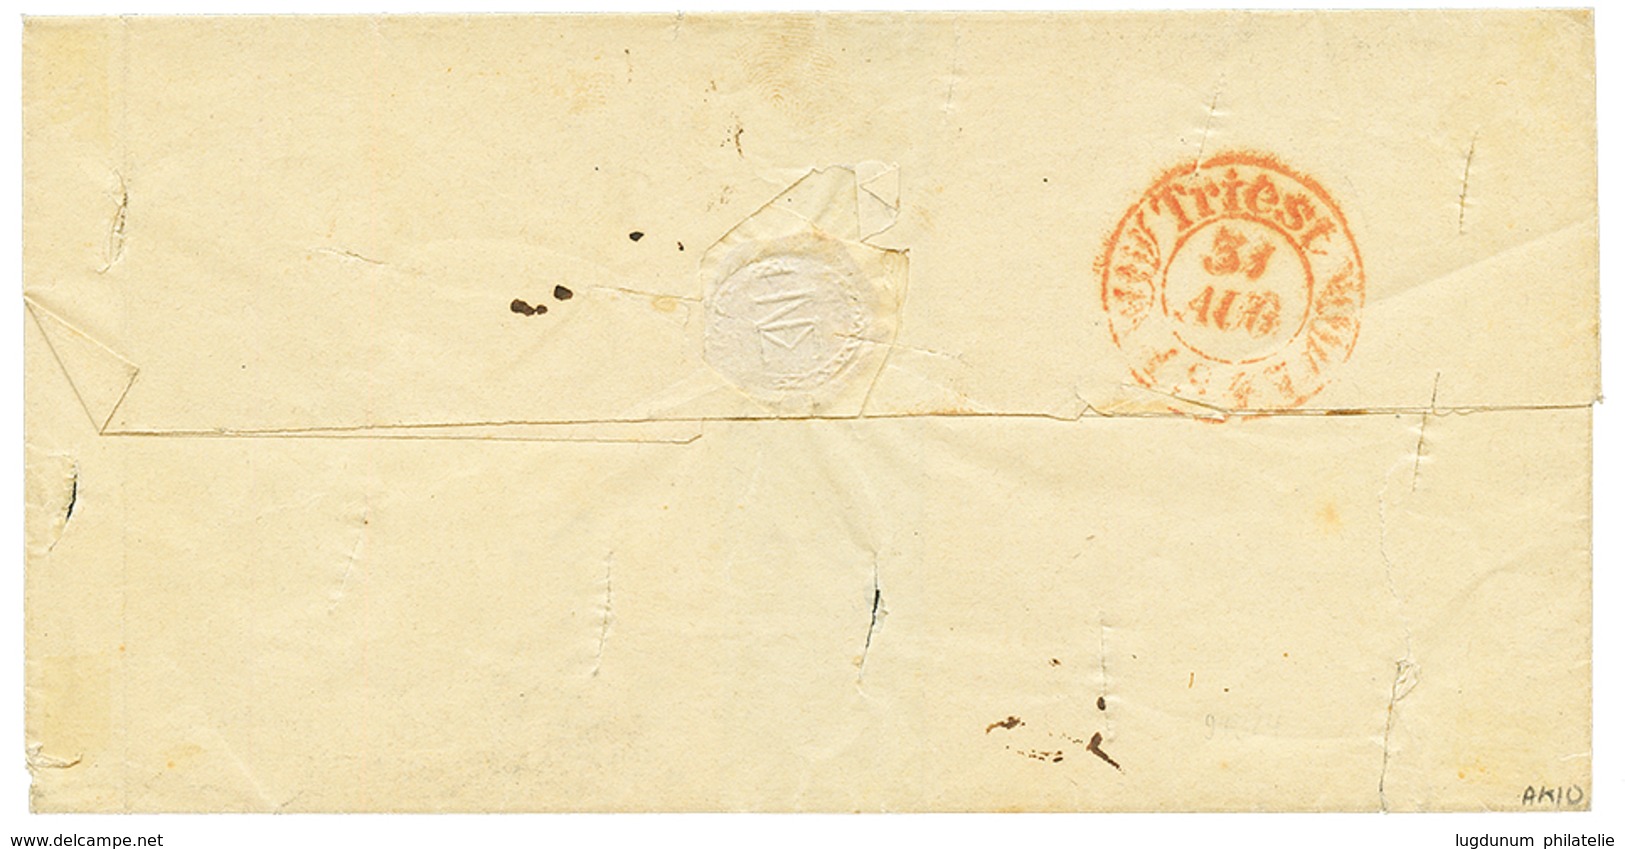 "CANEA" : 1847 "CANEA" Manuscript + Italian Cachet LETa.ARR.PER MARE On Disinfected Entire To TRIESTE. RARE. Vvf. - Levante-Marken